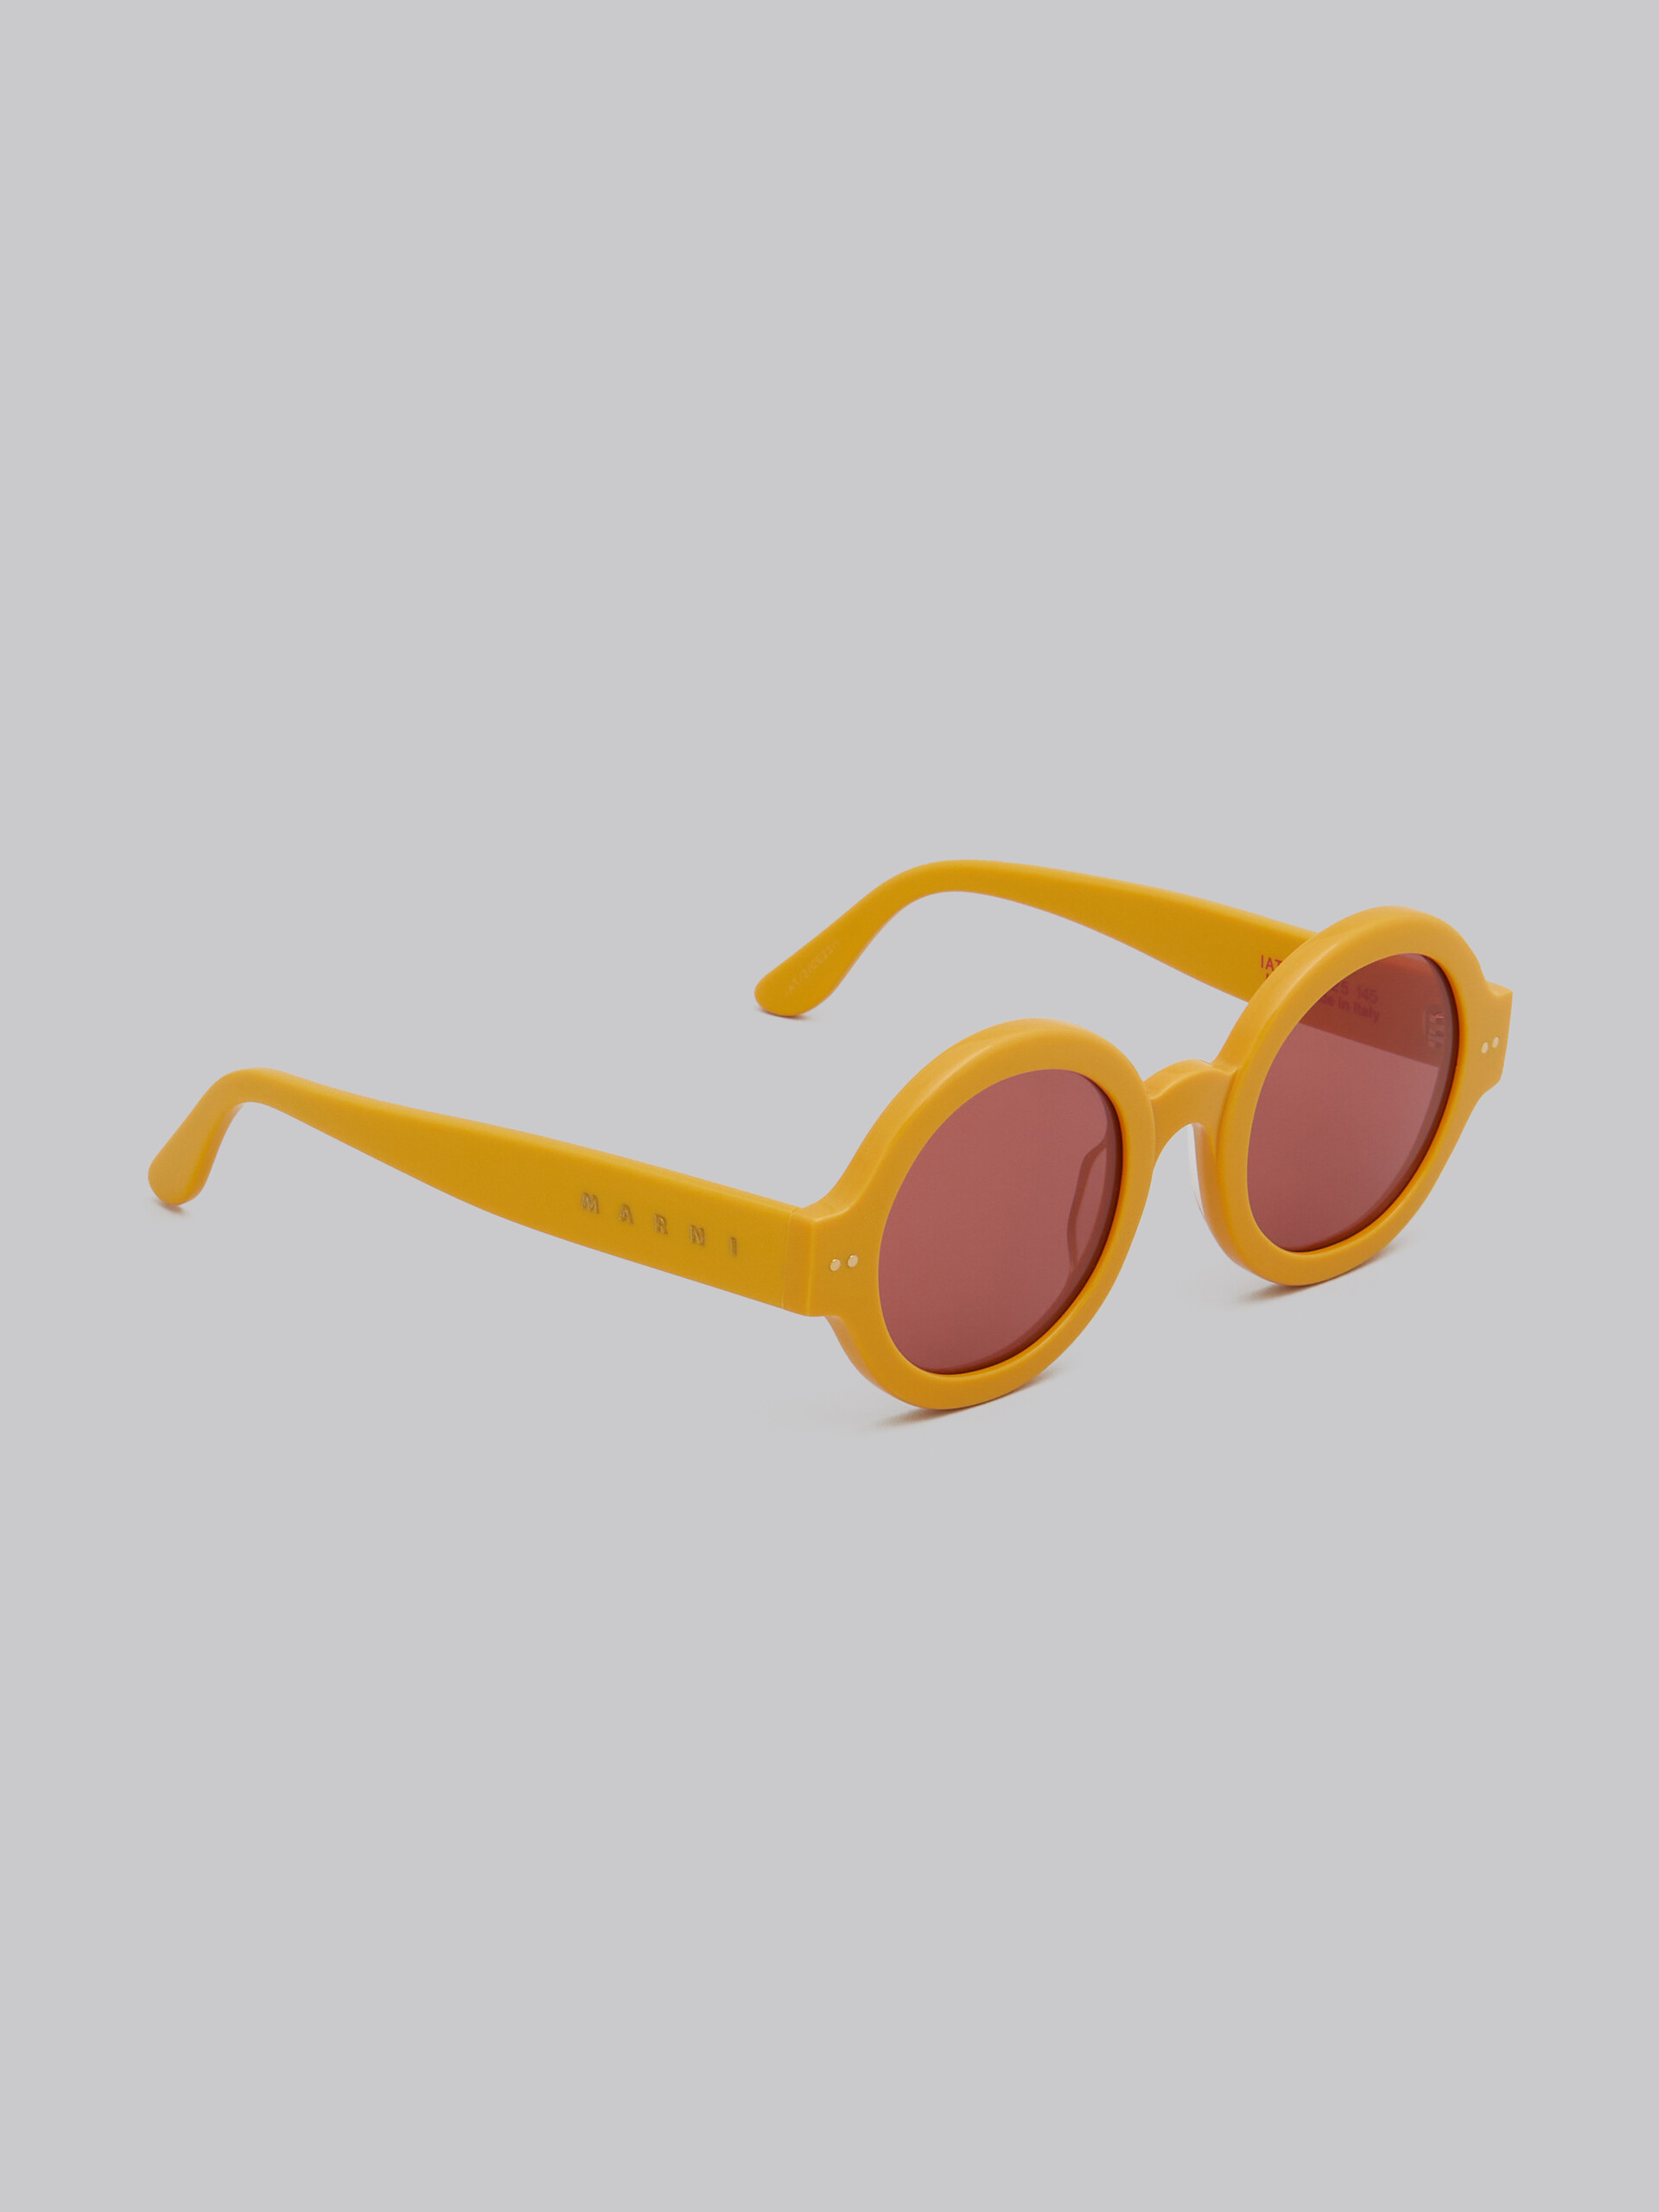 Nakagin Tower yellow sunglasses - Optical - Image 3